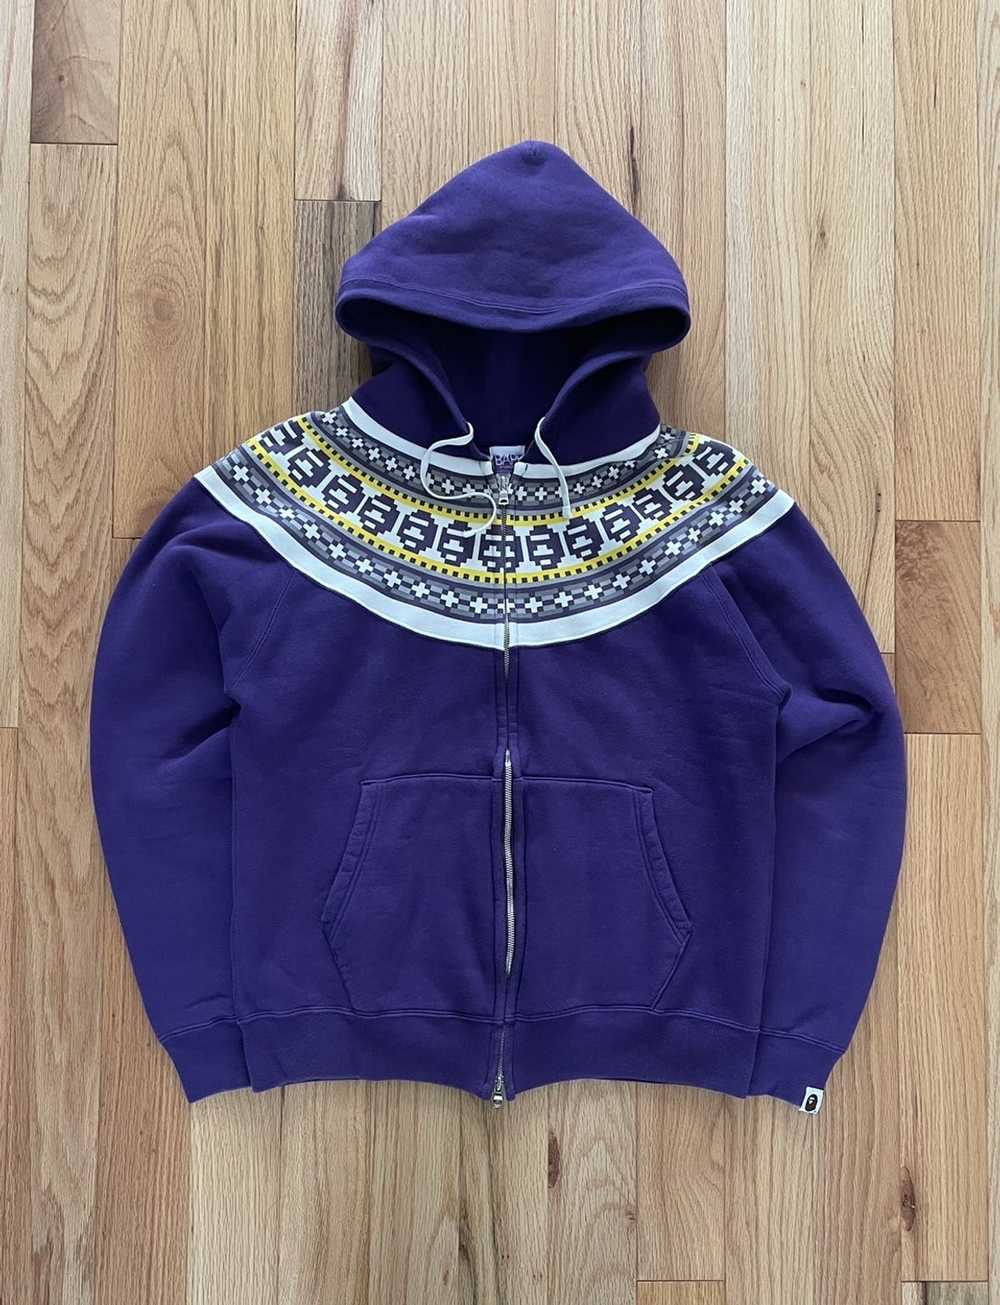 Bape vintage purple bape hoodie - image 1